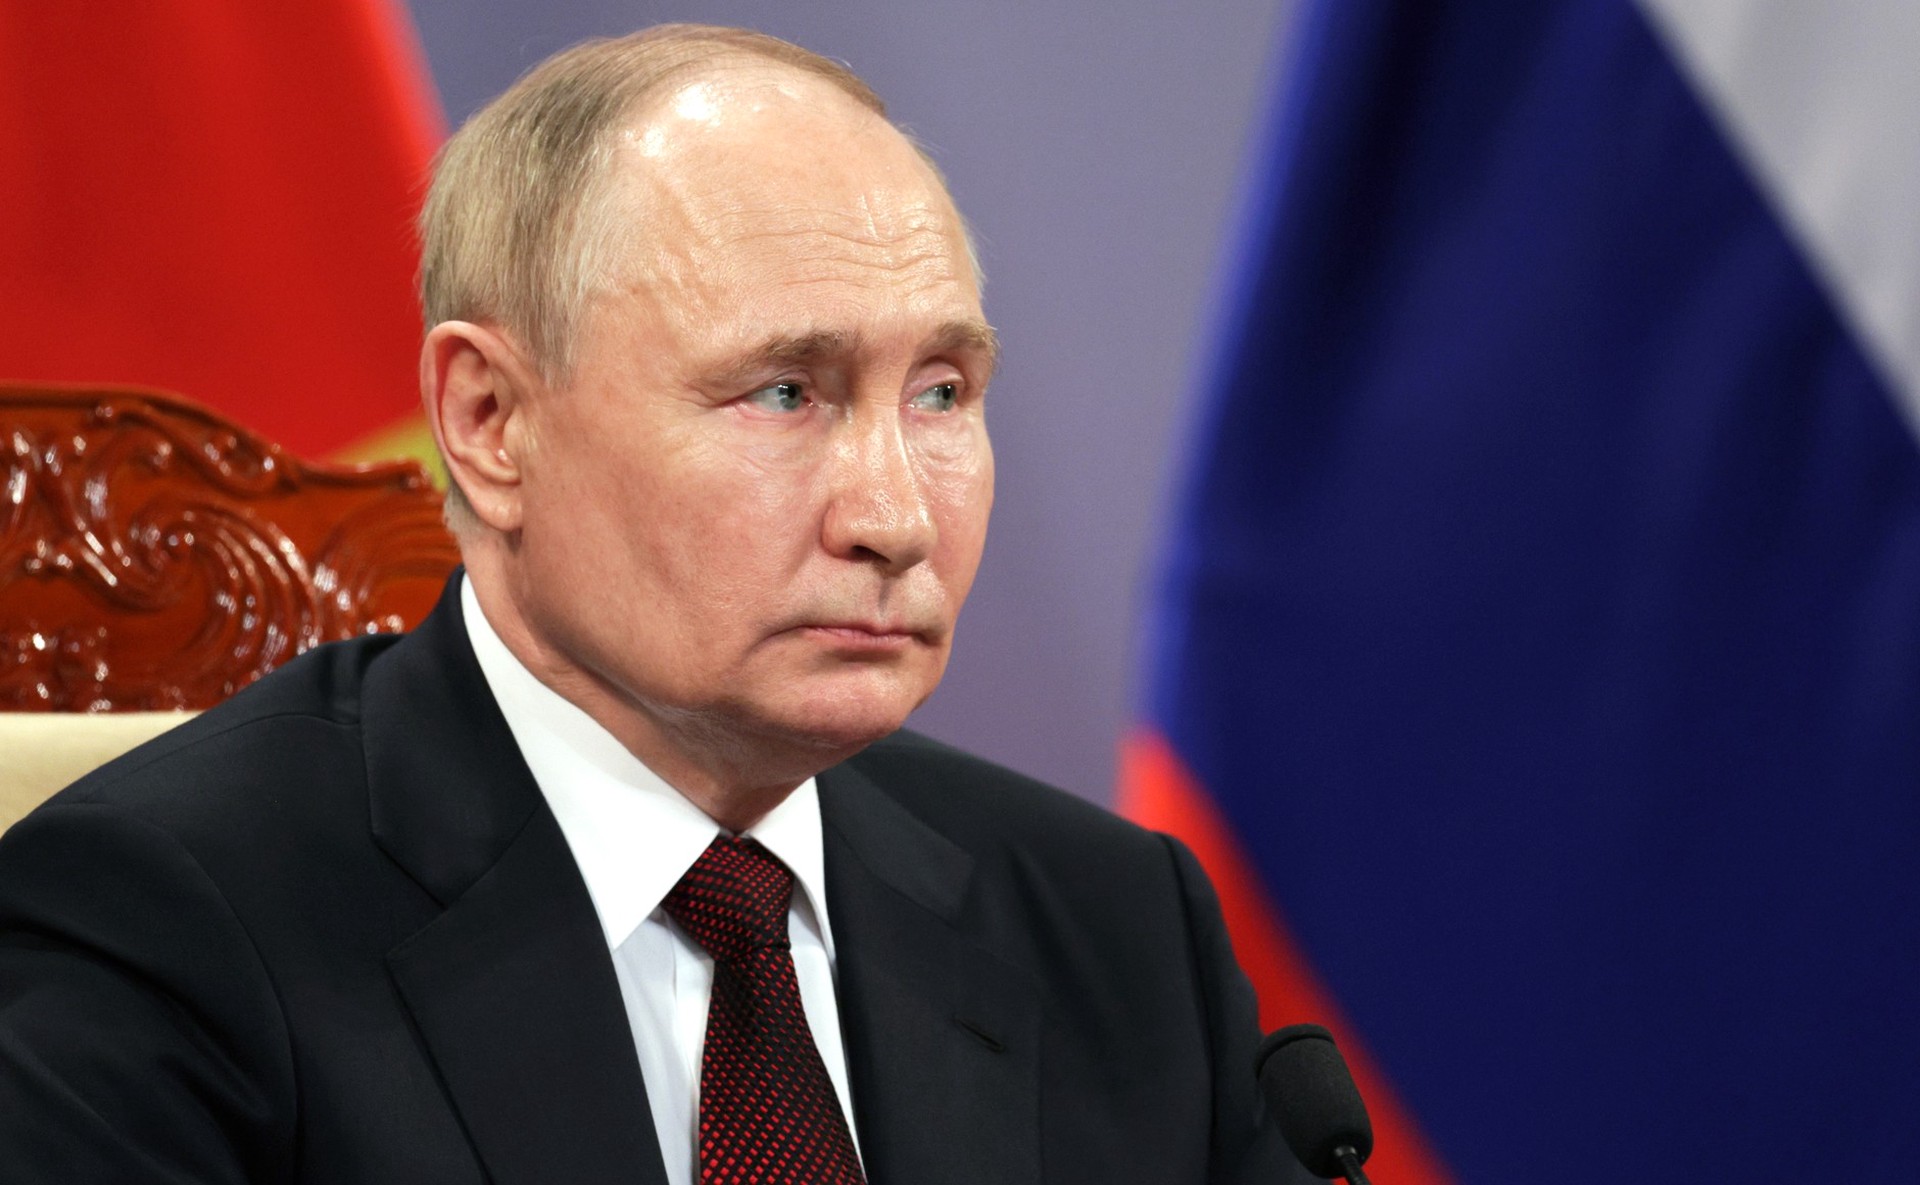  Путин: России пока не нужна возможность нанести превентивный ядерный удар